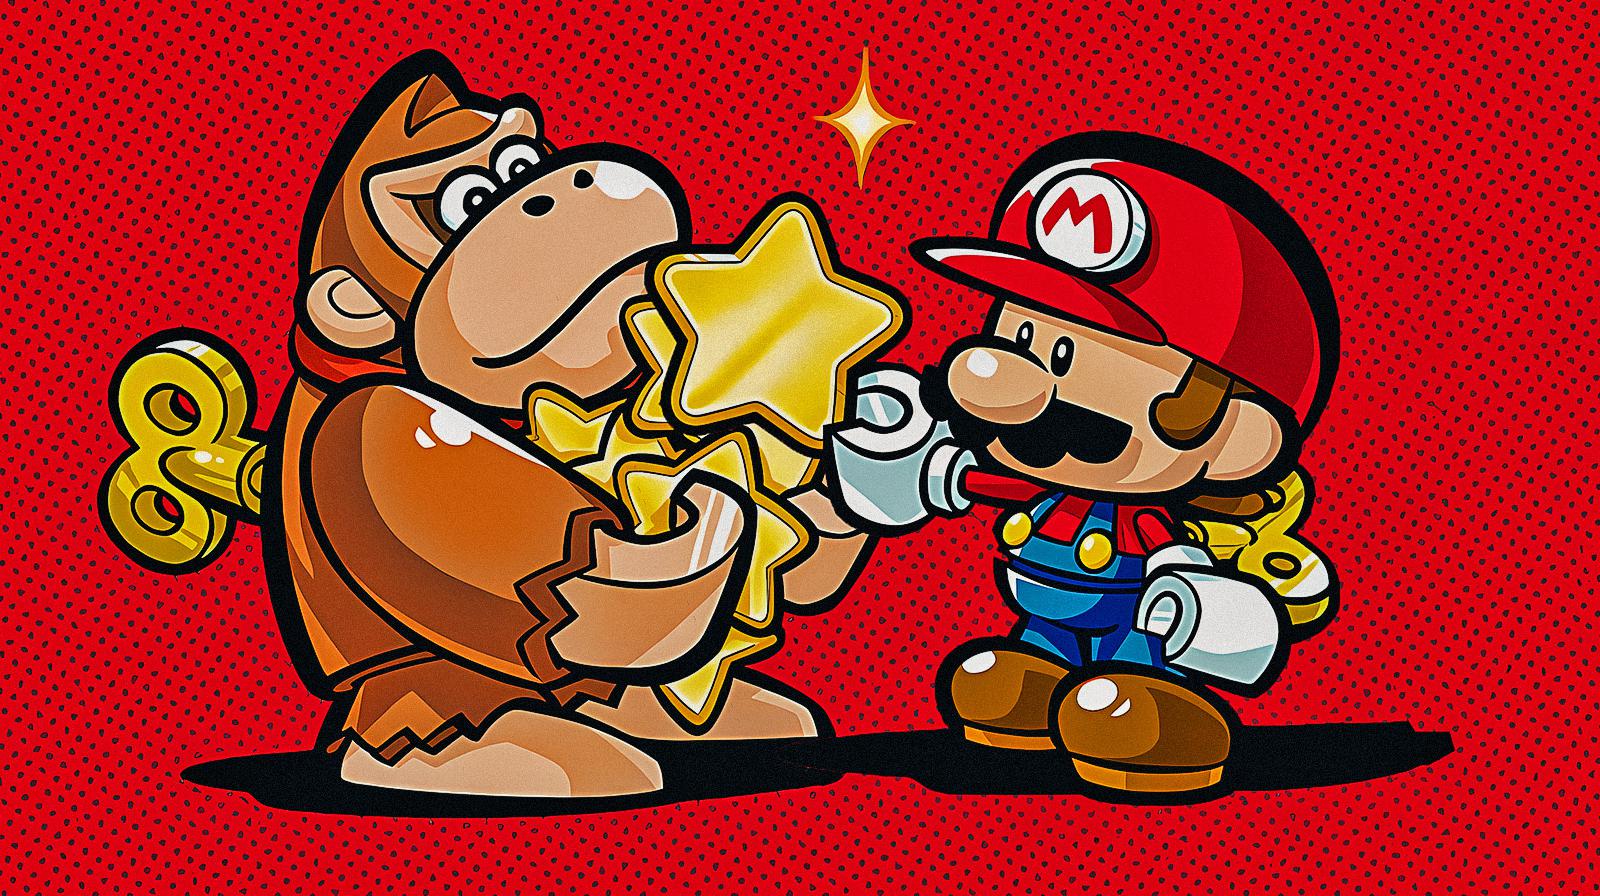 L’idraulico Nintendo, dai Kart a Mario vs. Donkey Kong